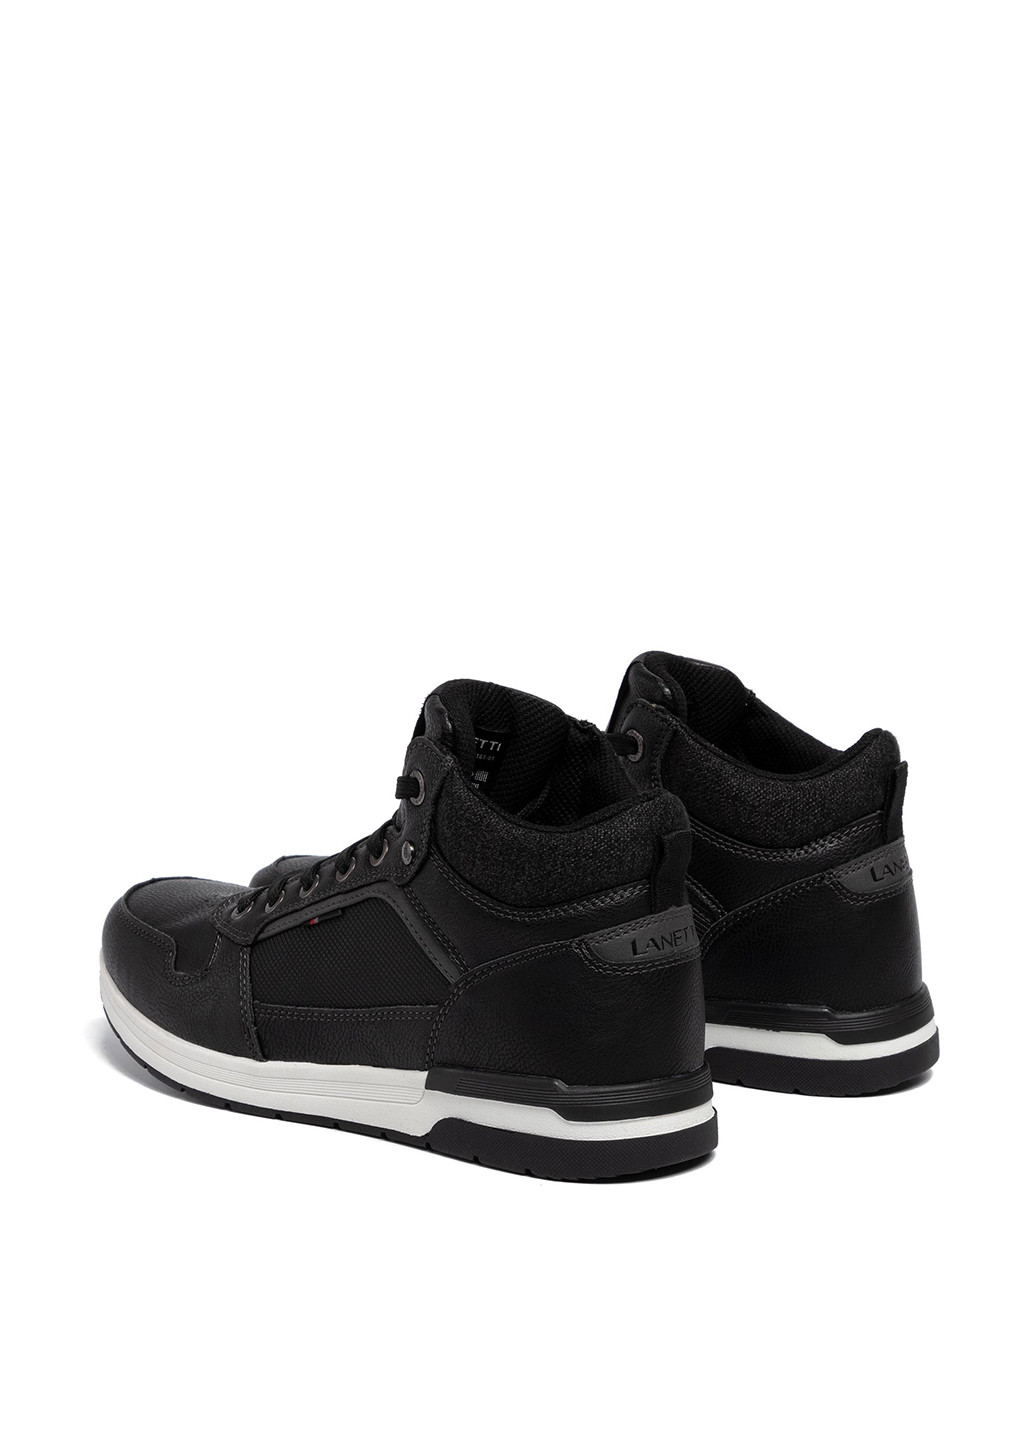 Черные осенние черевики mp07-81161-01 Lanetti